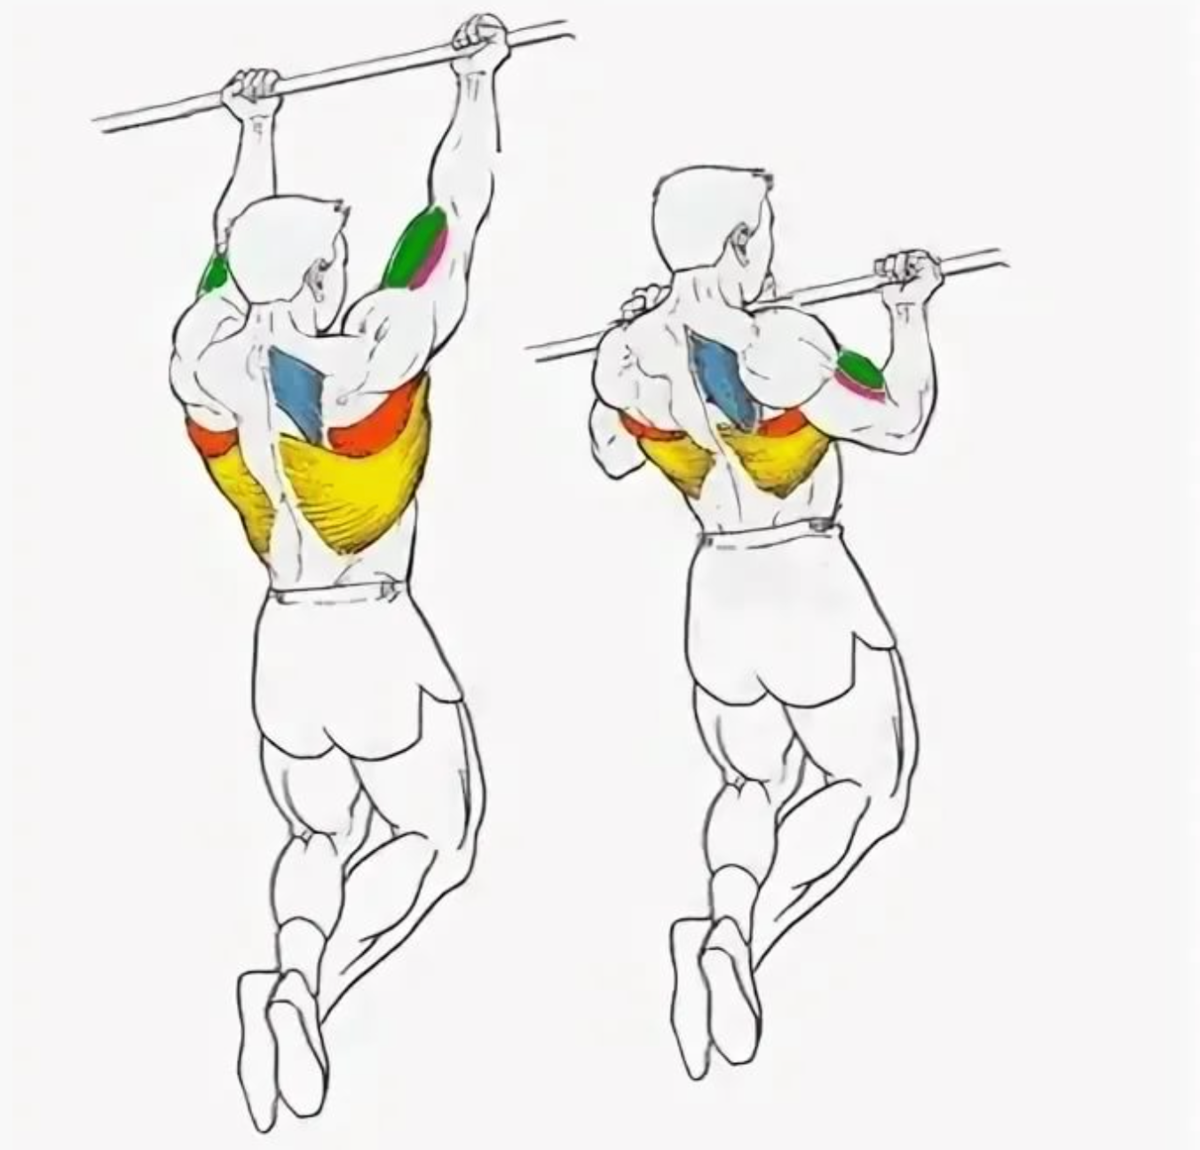 Подтягивания узким хватом: какие мышцы работают, техника